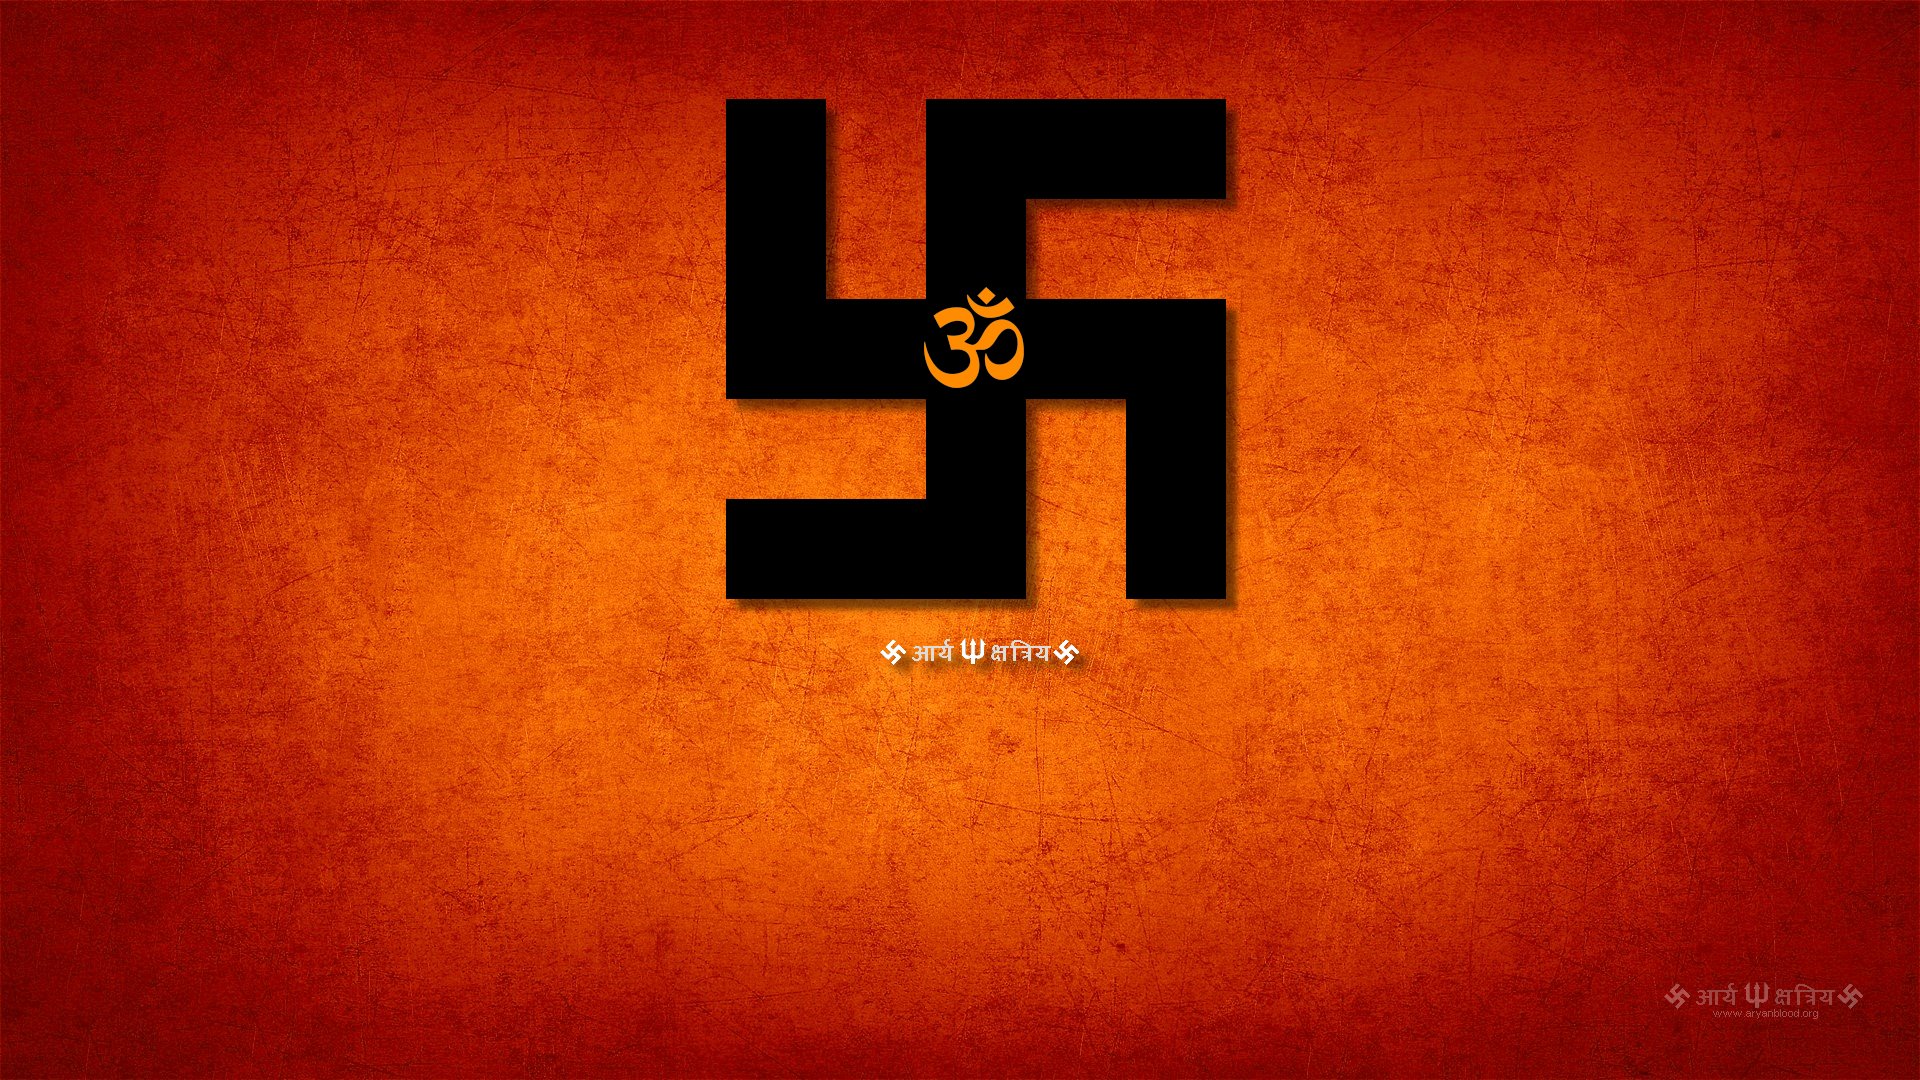 swastik hd wallpaper,text,font,orange,red,logo